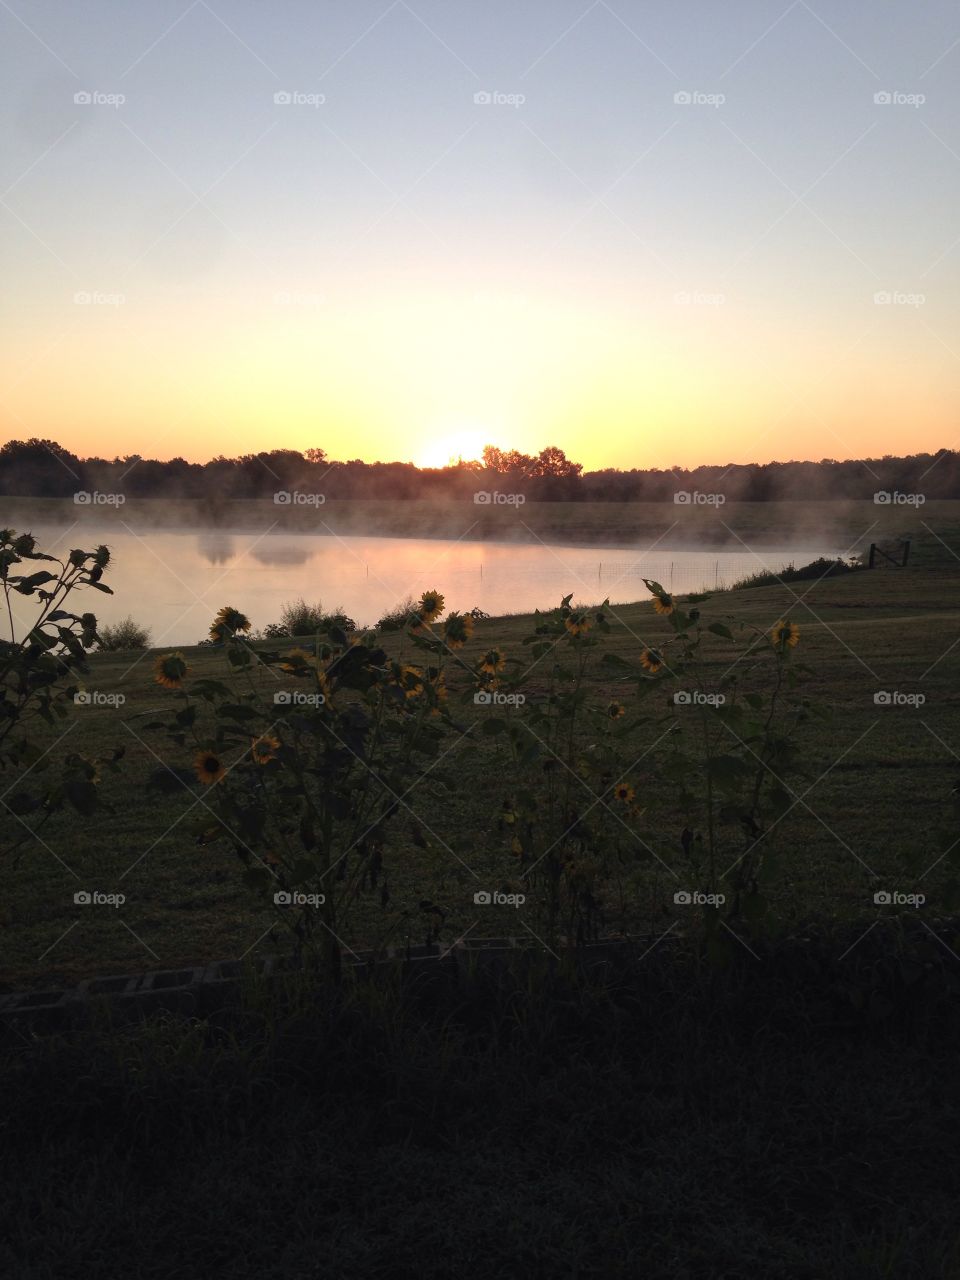 Sunrise on the farm. A beautiful sunrise on a farm in Alabama